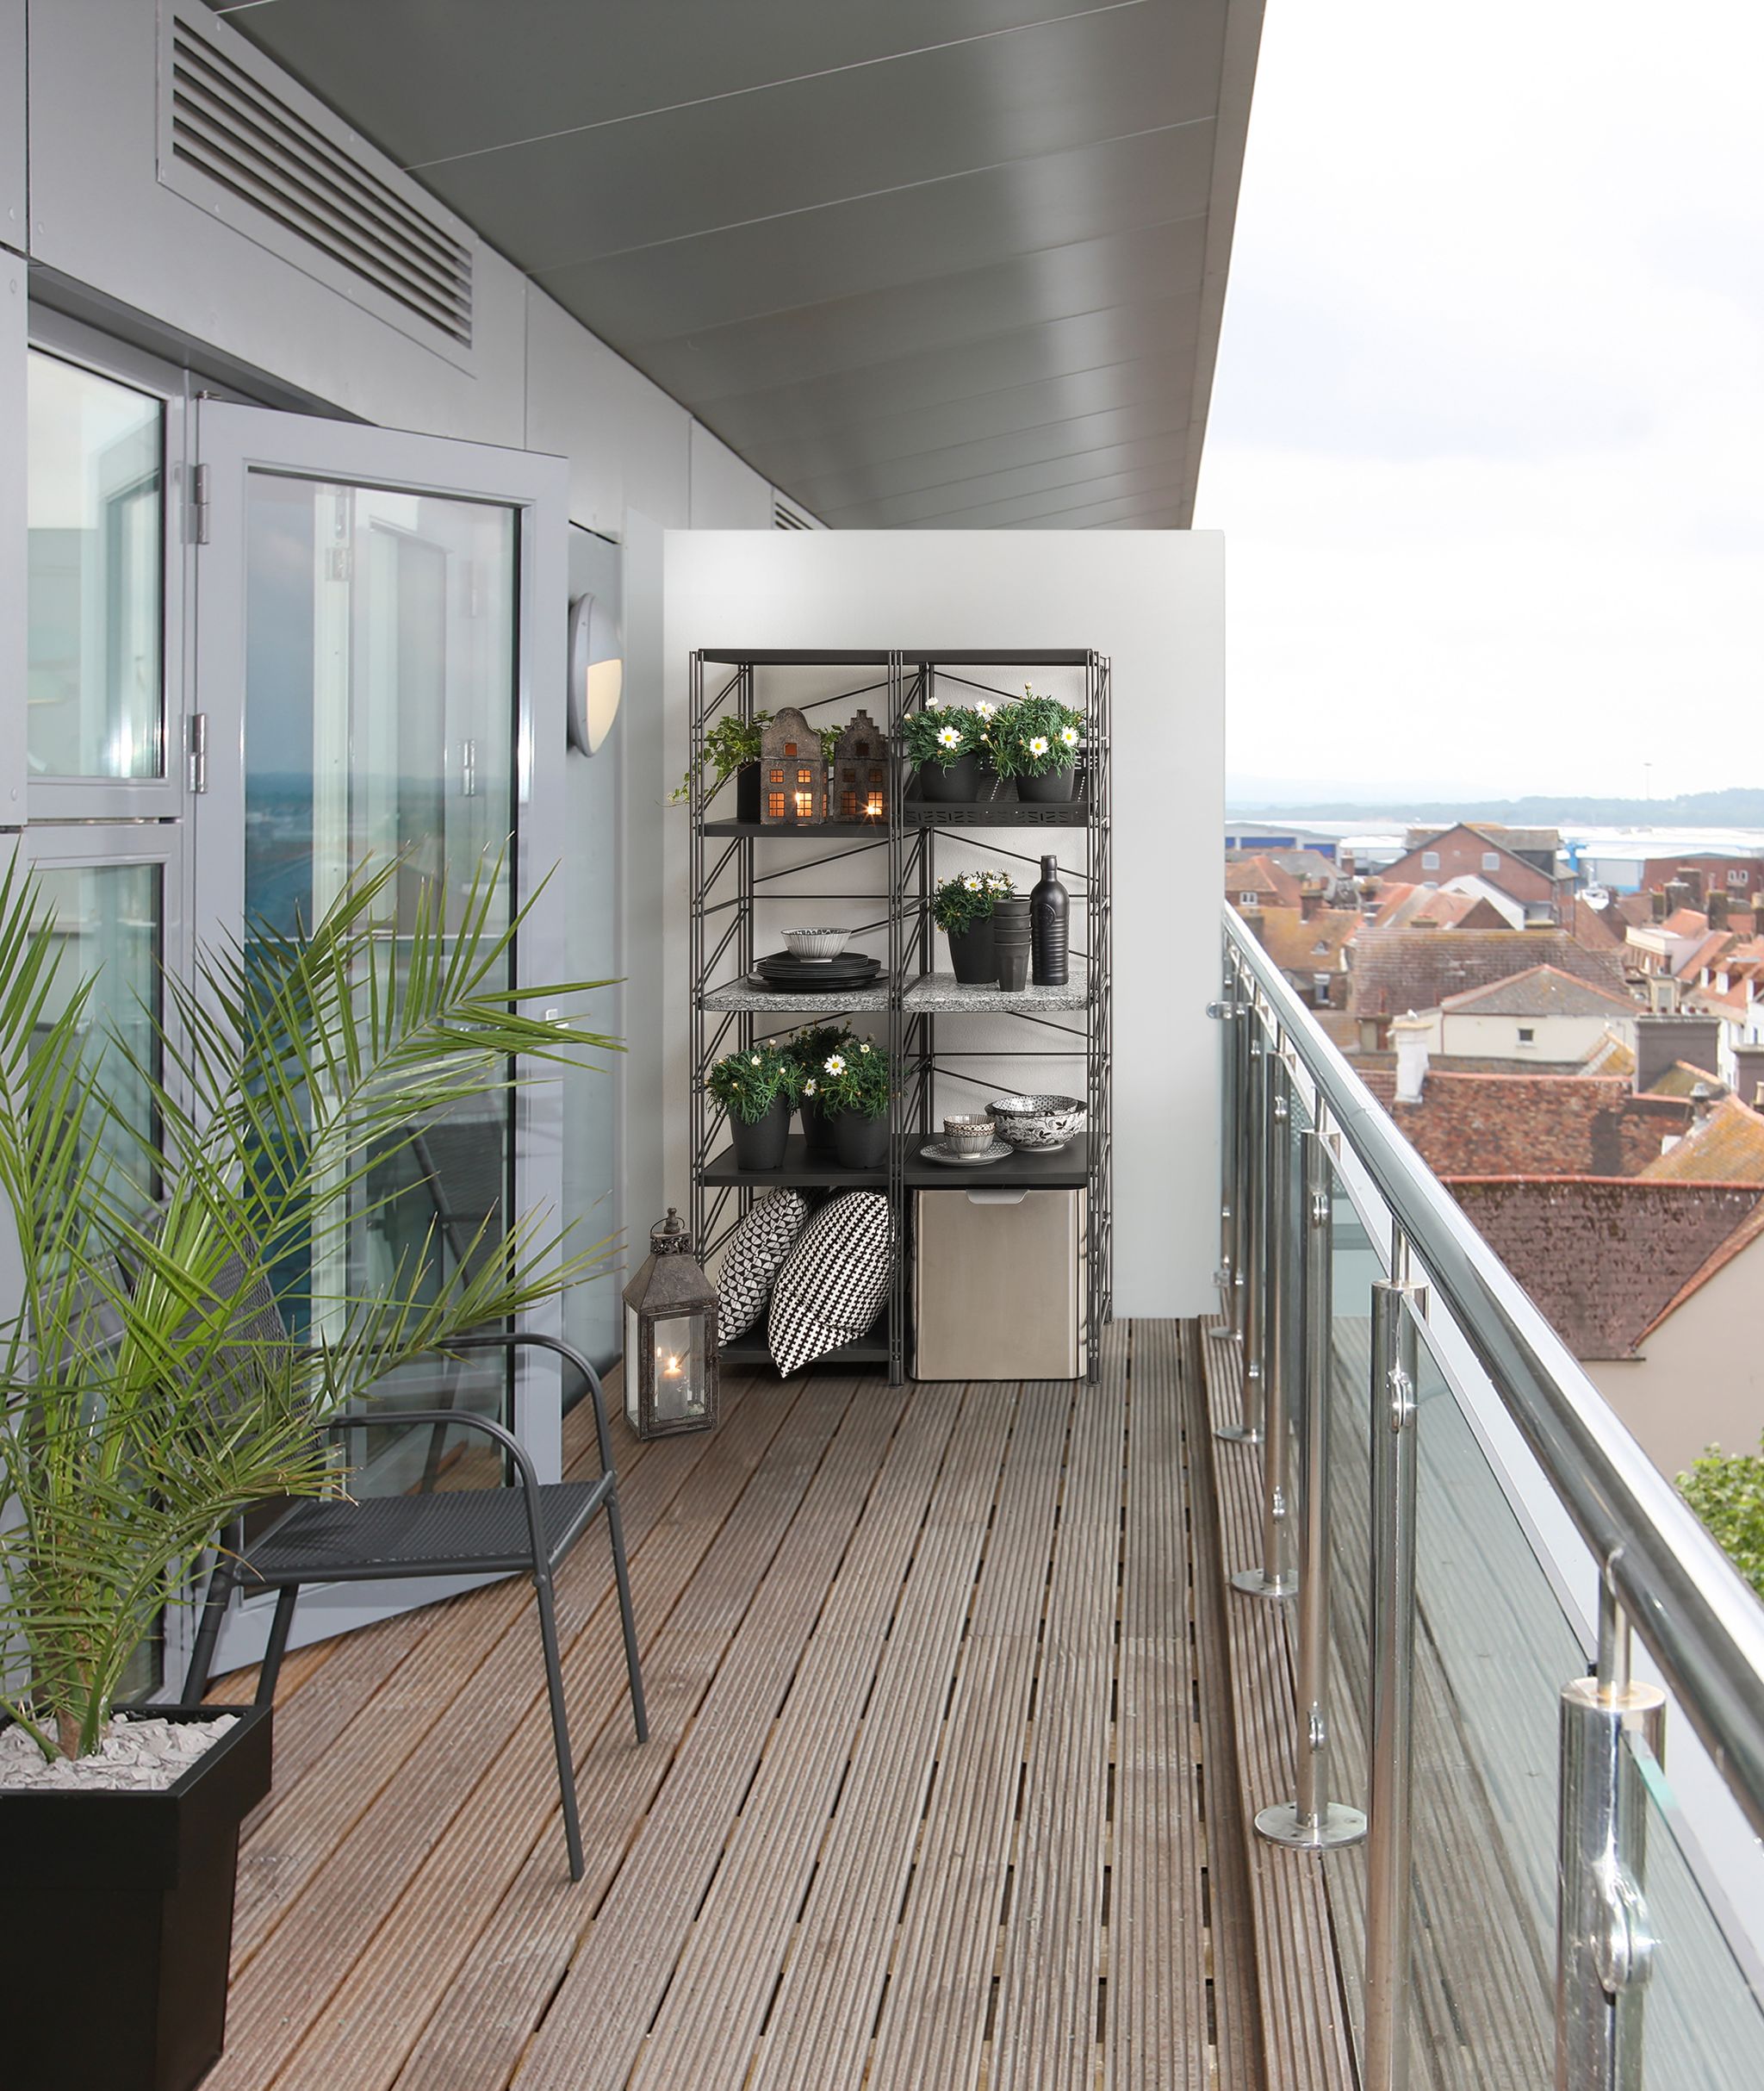 Idee fai da te per arredare balconi e terrazzi - 19 idee low cost -  Paperblog  Decorazione di appartamenti, Vita in appartemento, Arredamento  da balconi piccoli